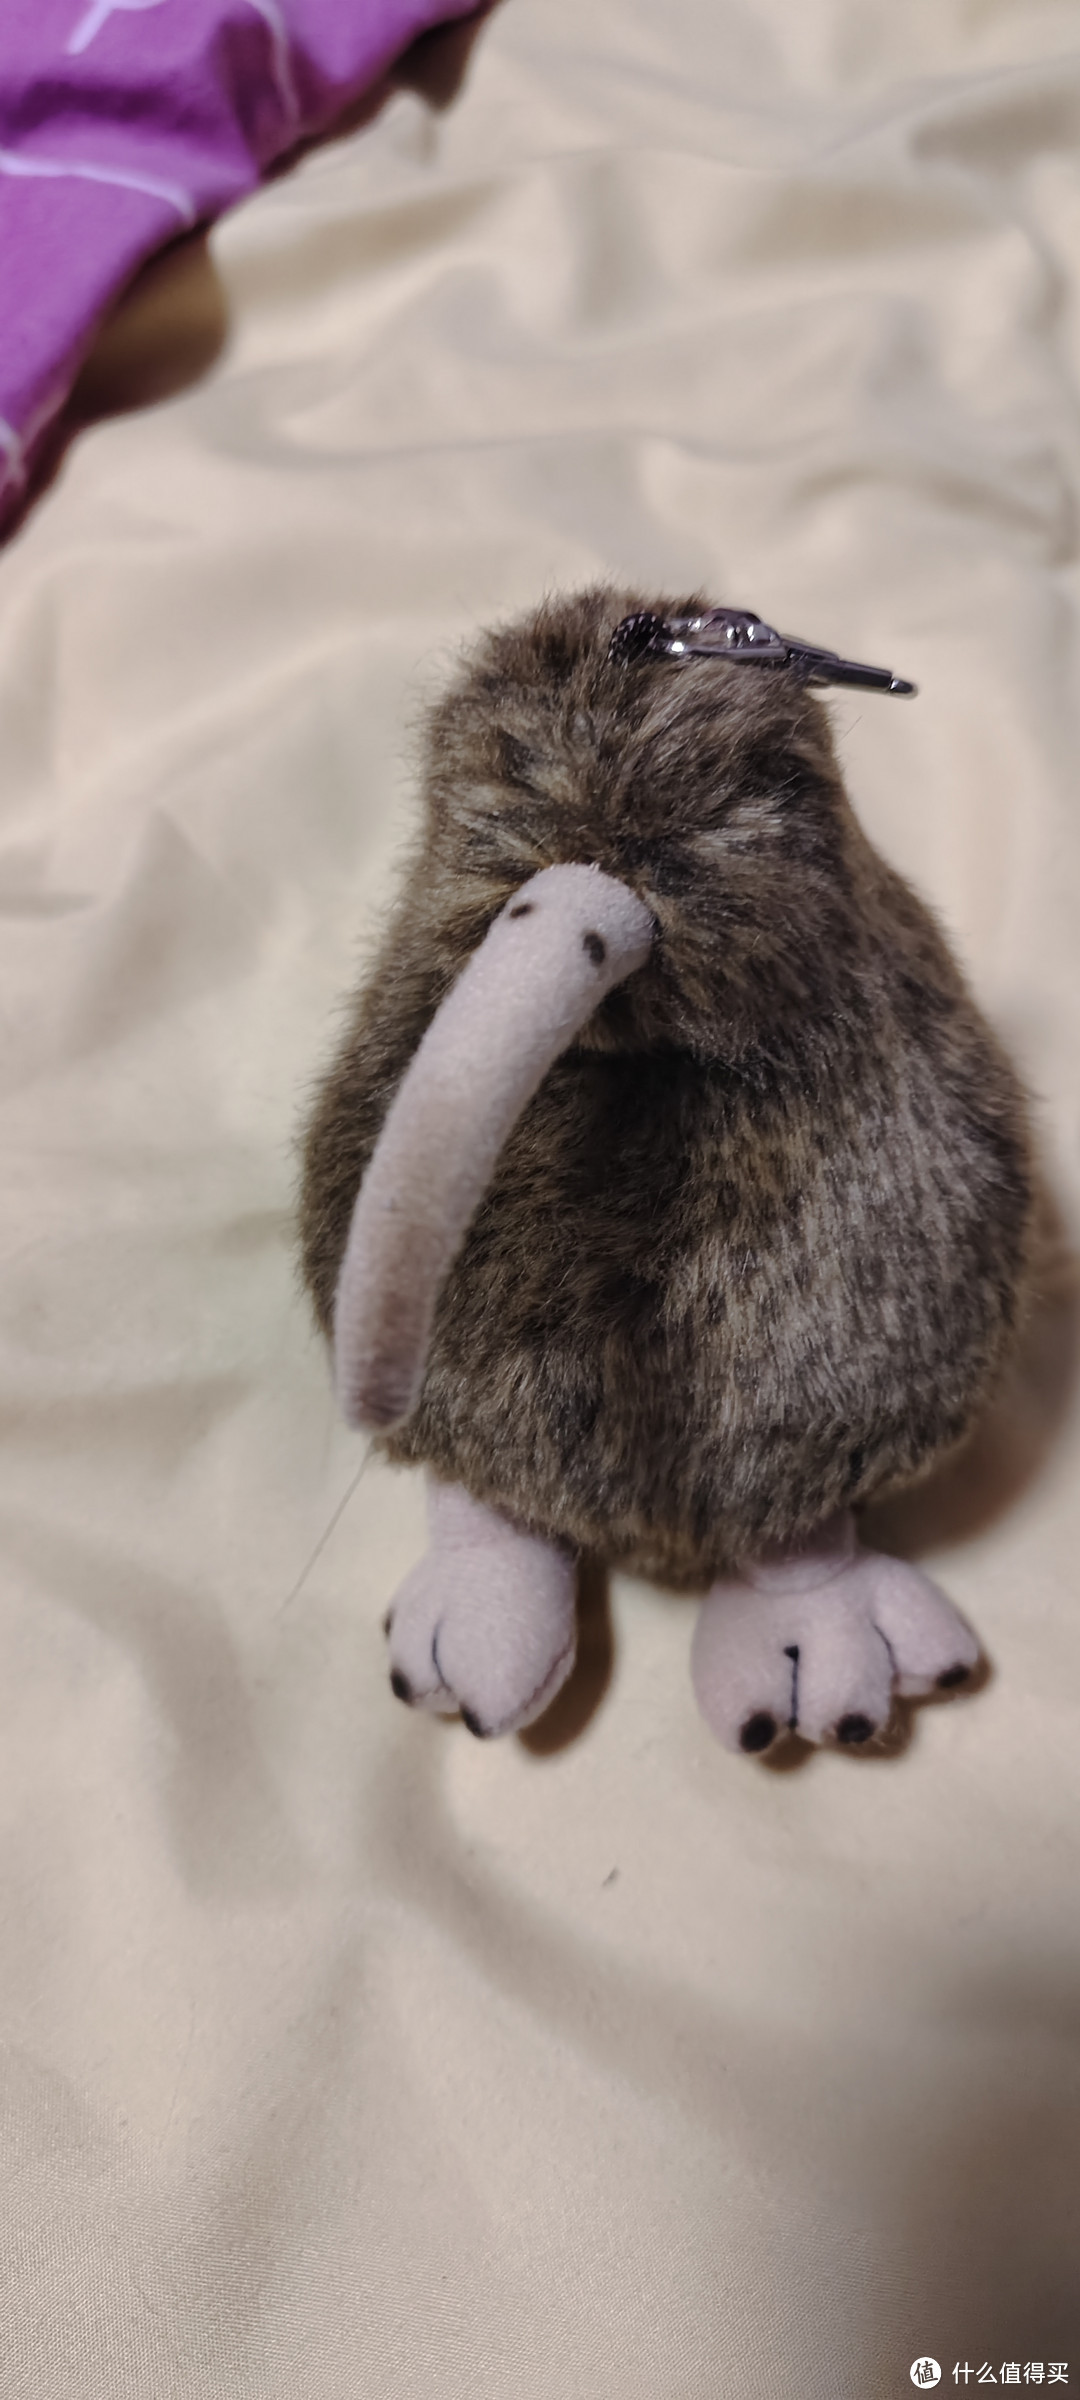 澳大利亚国鸟/喵星人的新玩具/kiwi几维鸟毛绒玩具  新西兰几维鸟钥匙扣 奇异鸟挂件 新西兰纪念